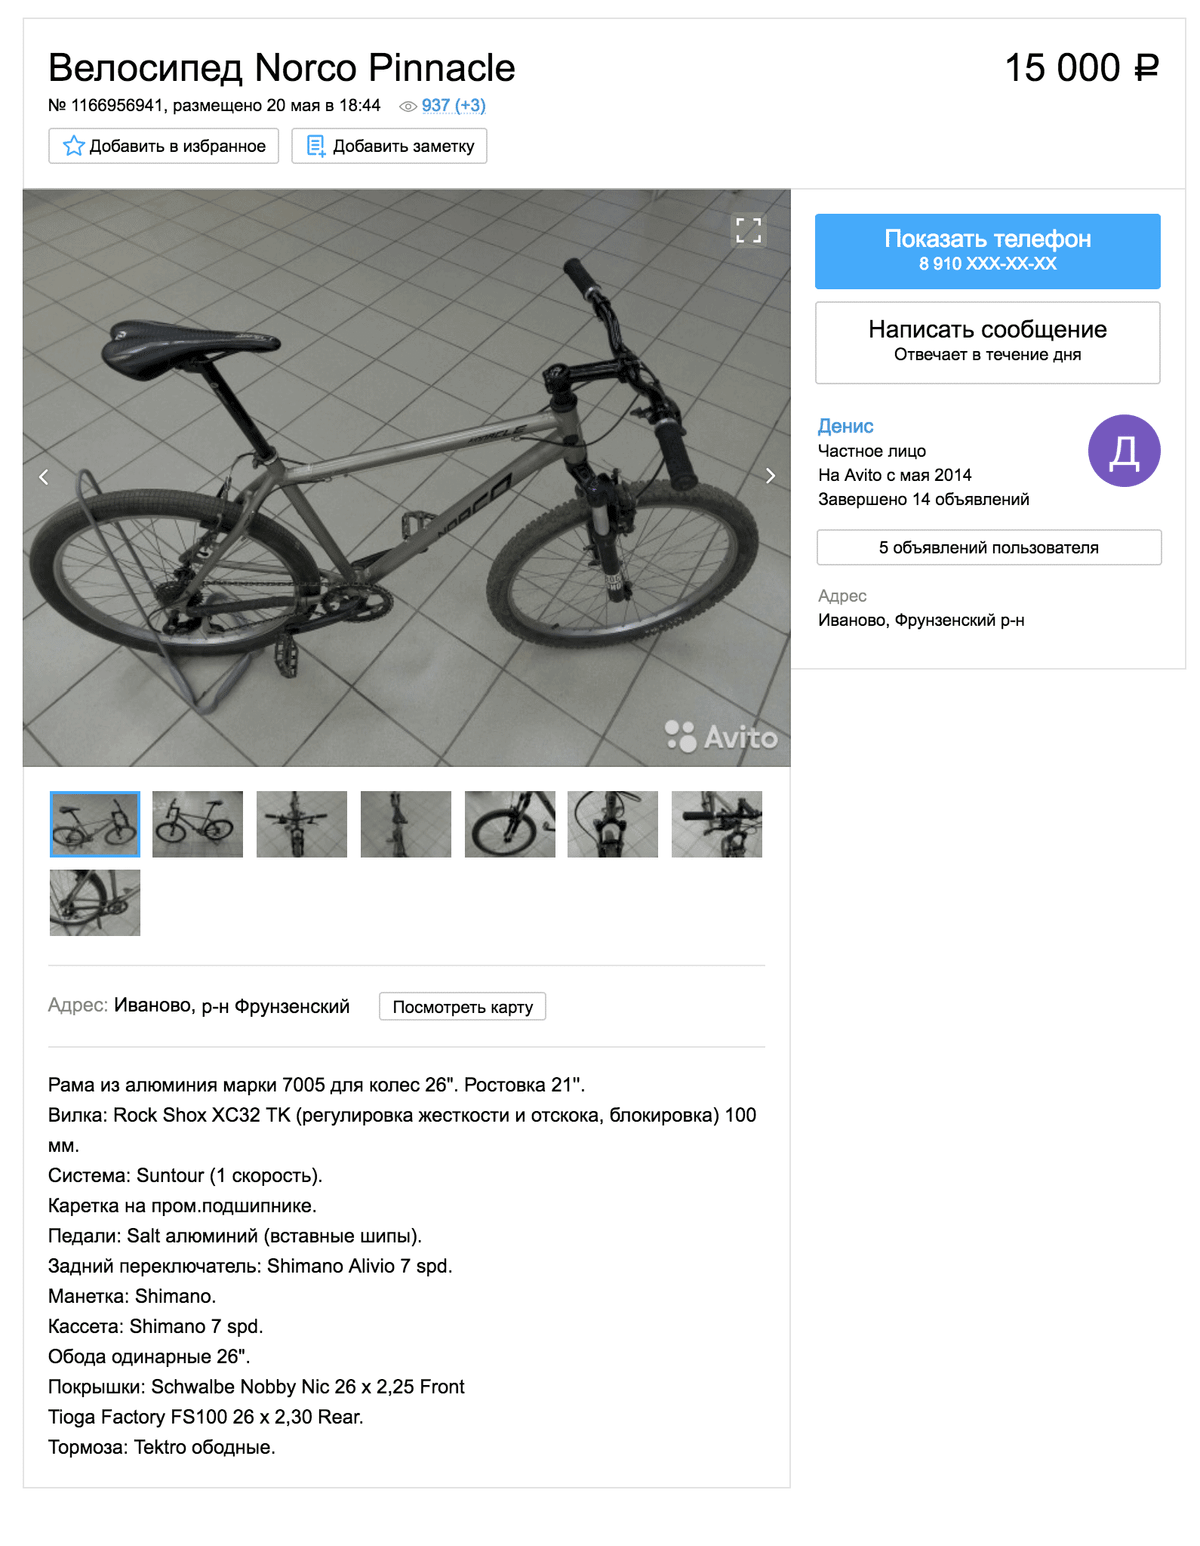 Велосипед Купить В Иваново Список Магазинов